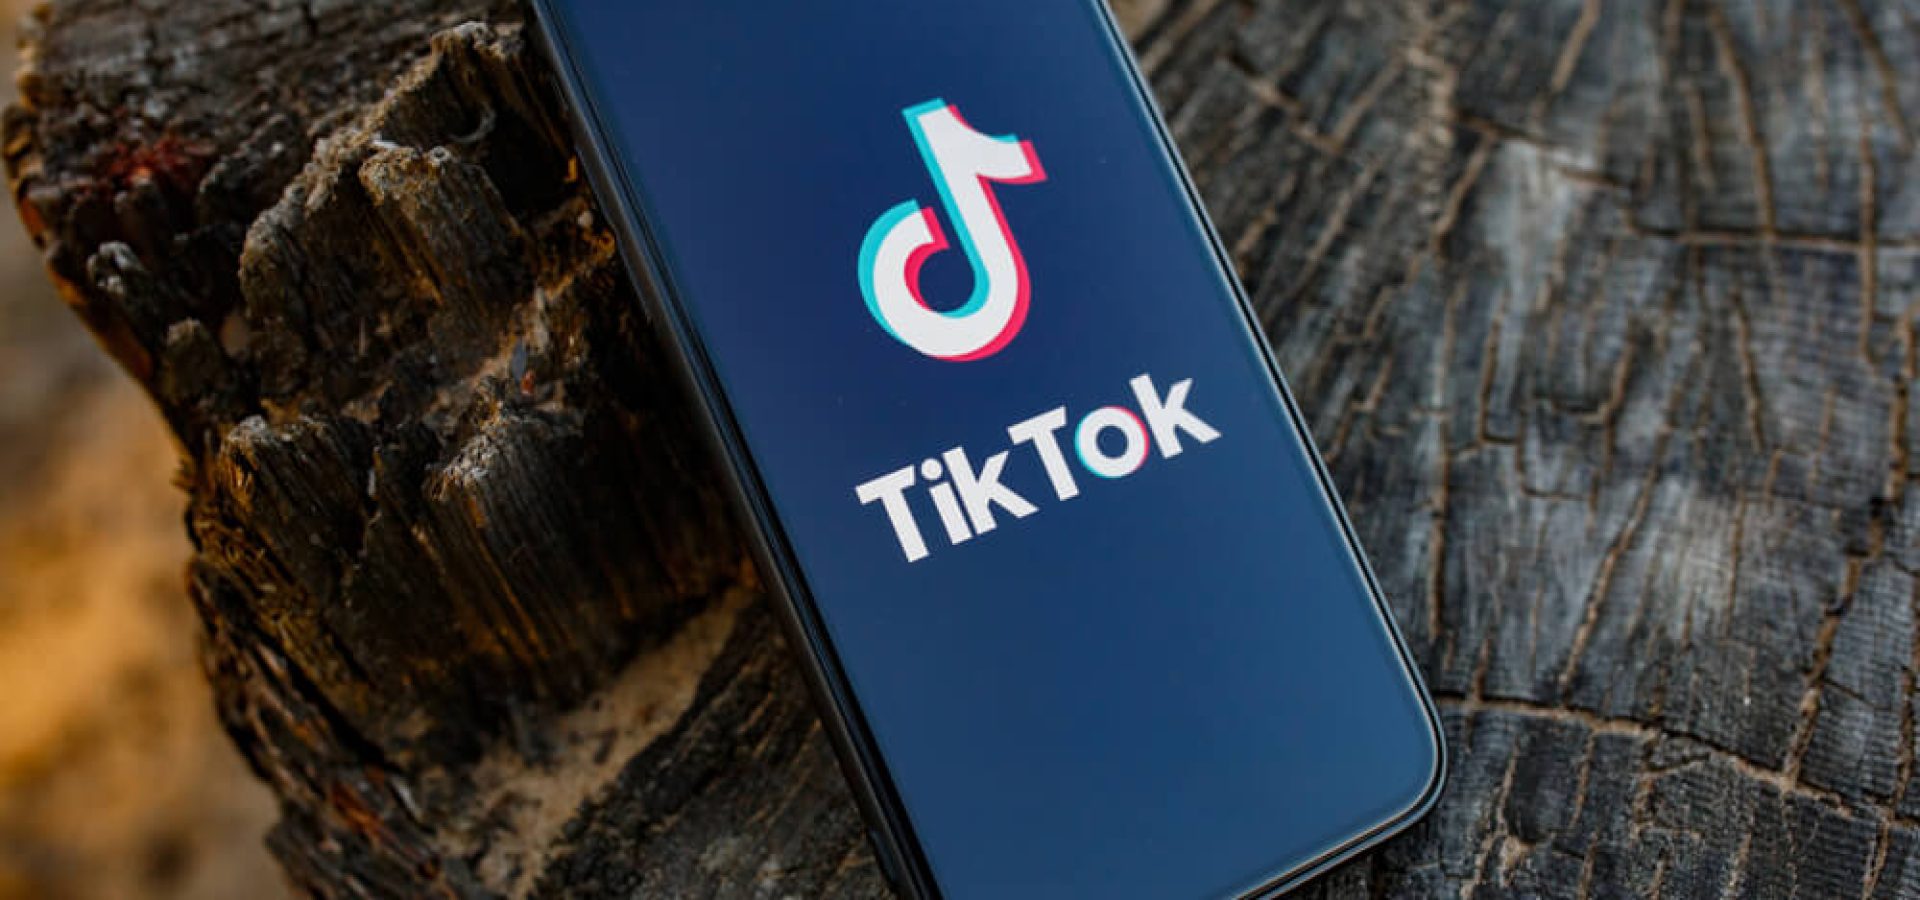 Tik Tok application icon on smartphone